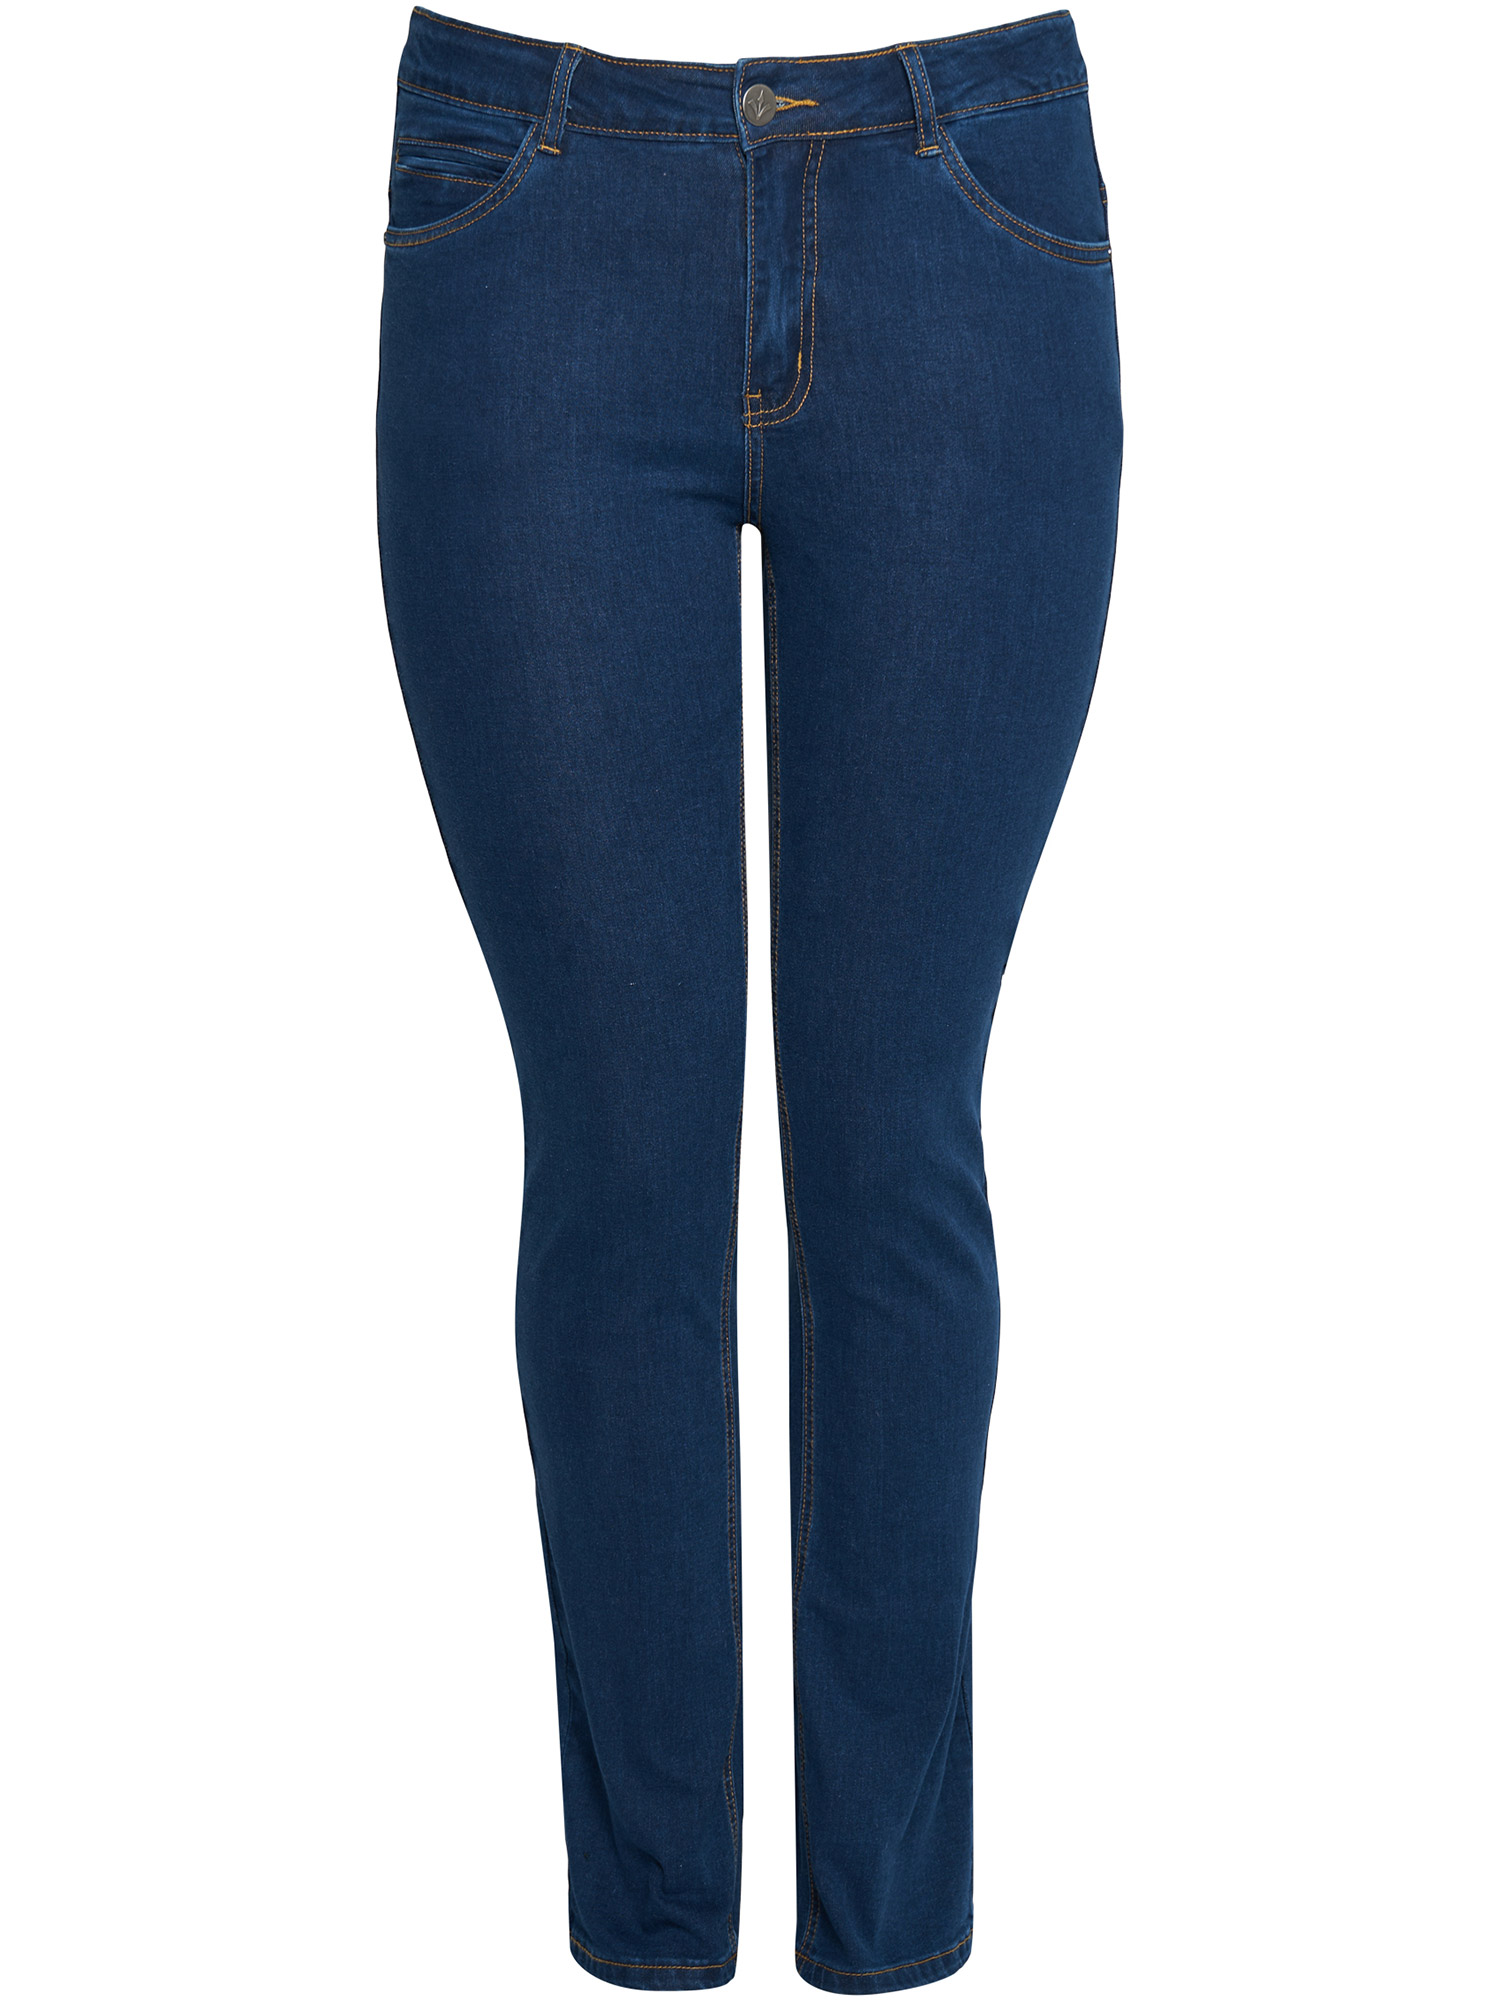 MONACO - Mørkeblå strækbar jeans med høj talje fra Adia